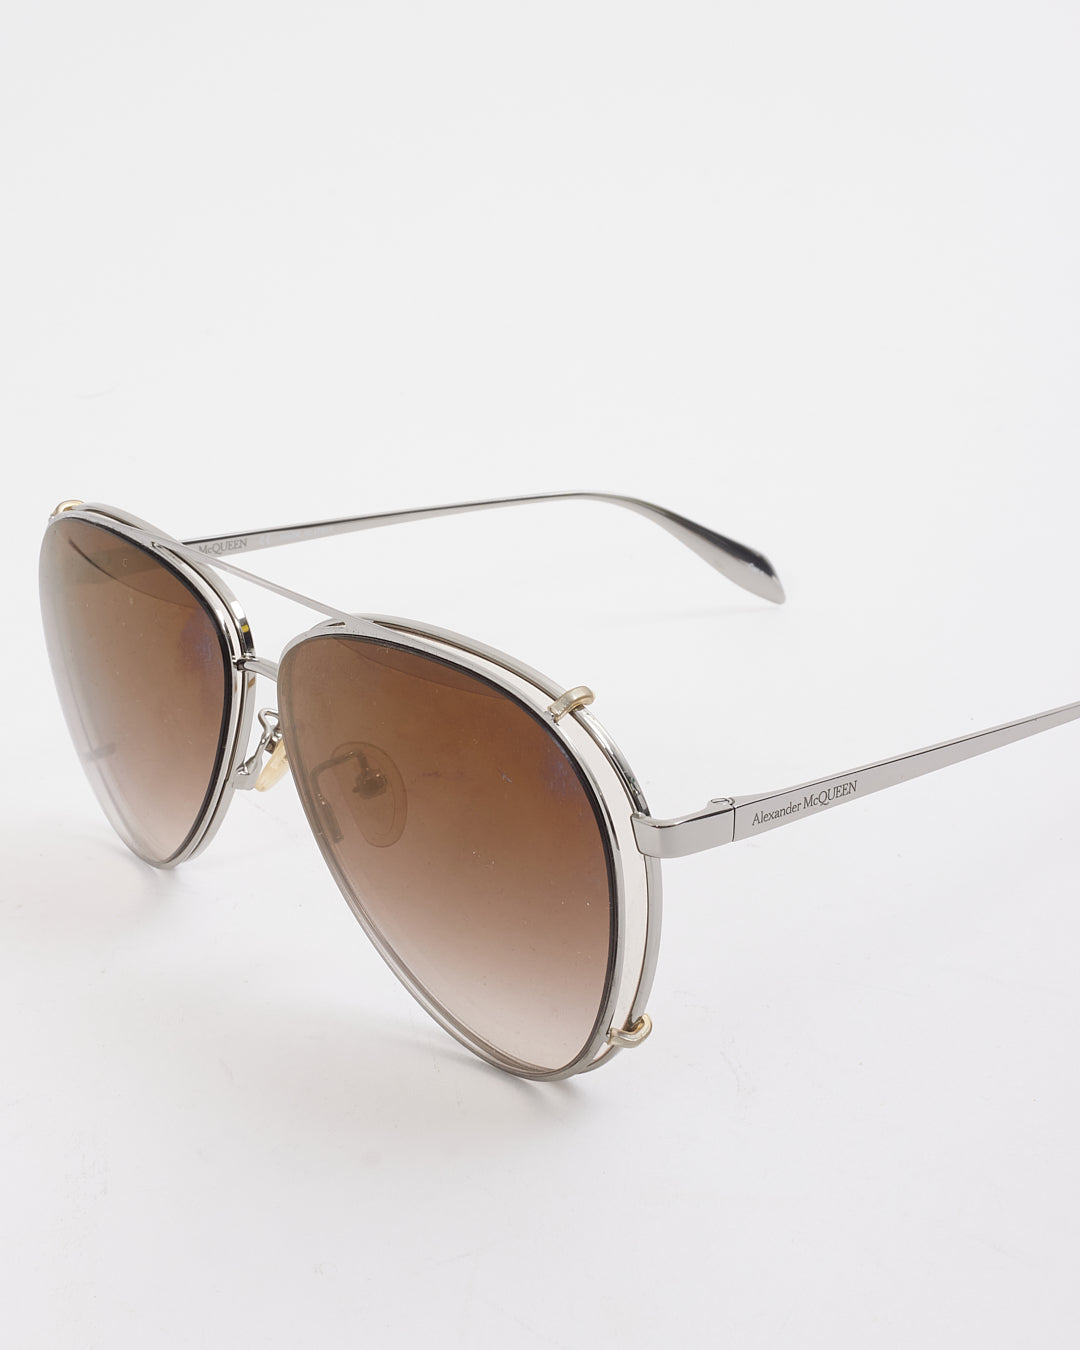 Alexander McQueen Silver Aviator AM0263S Sunglasses